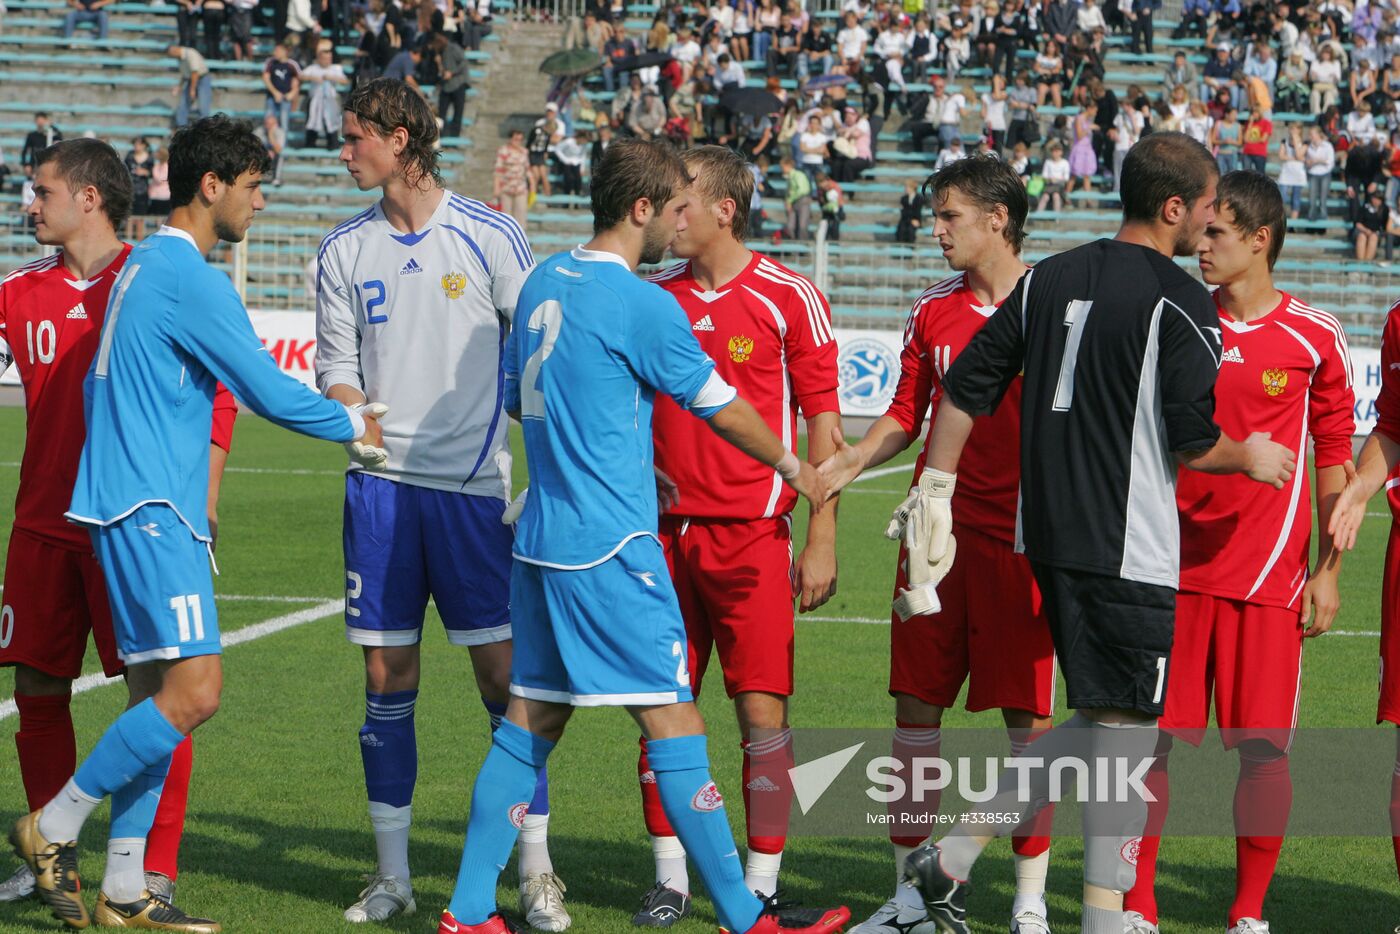 2009 UEFA European Under-21 Championship qualifier